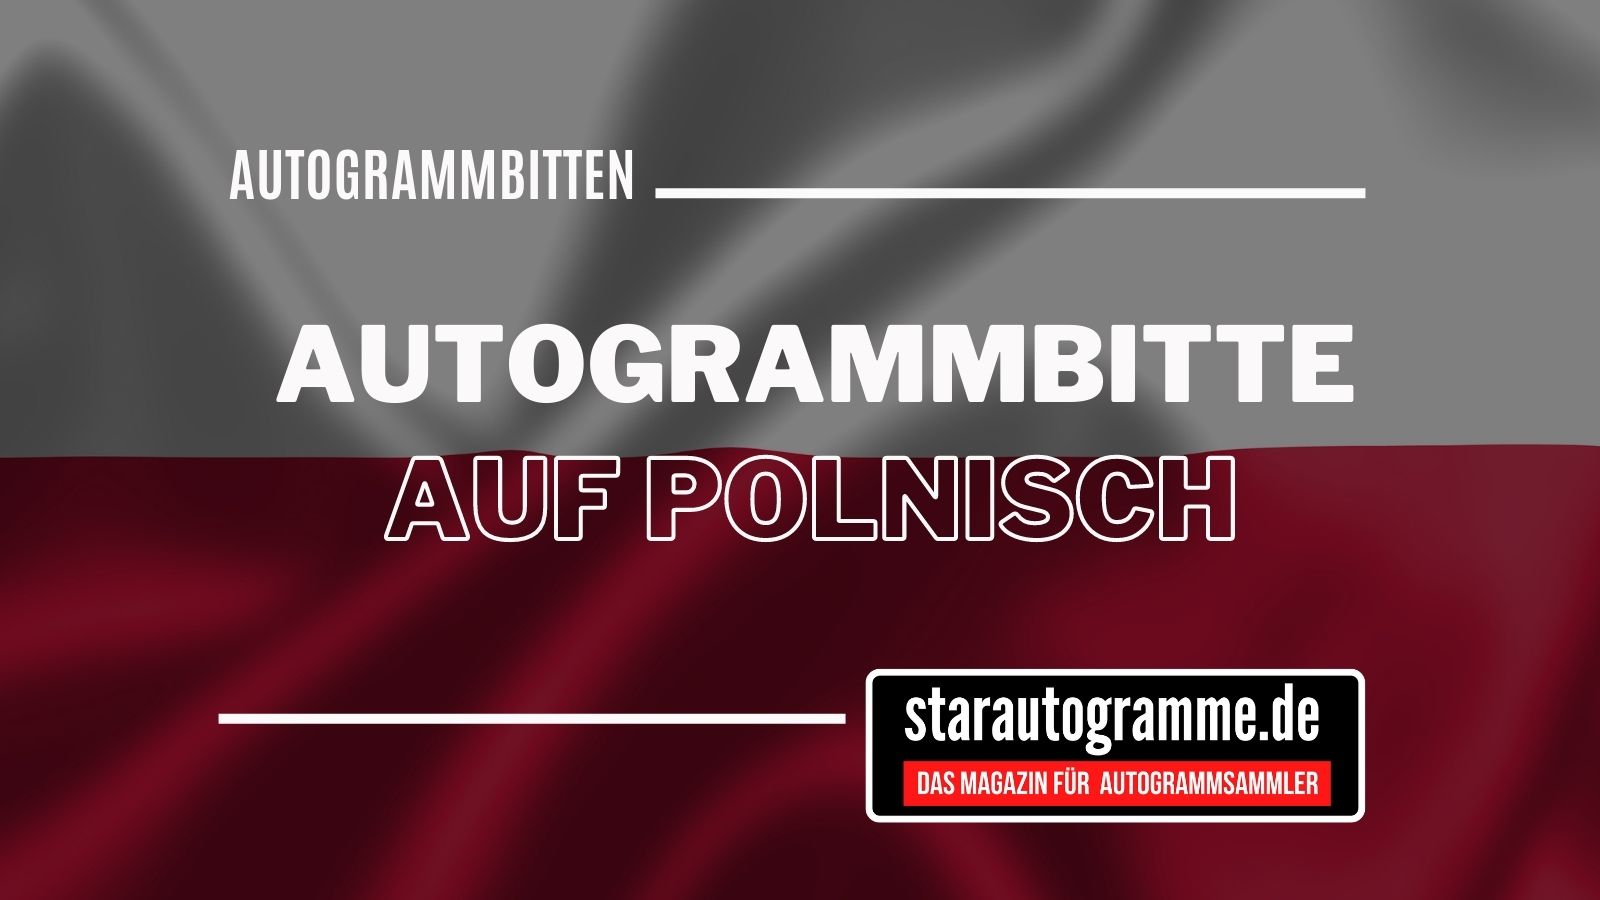 Standardautogrammbitte Deutsch-Polnisch